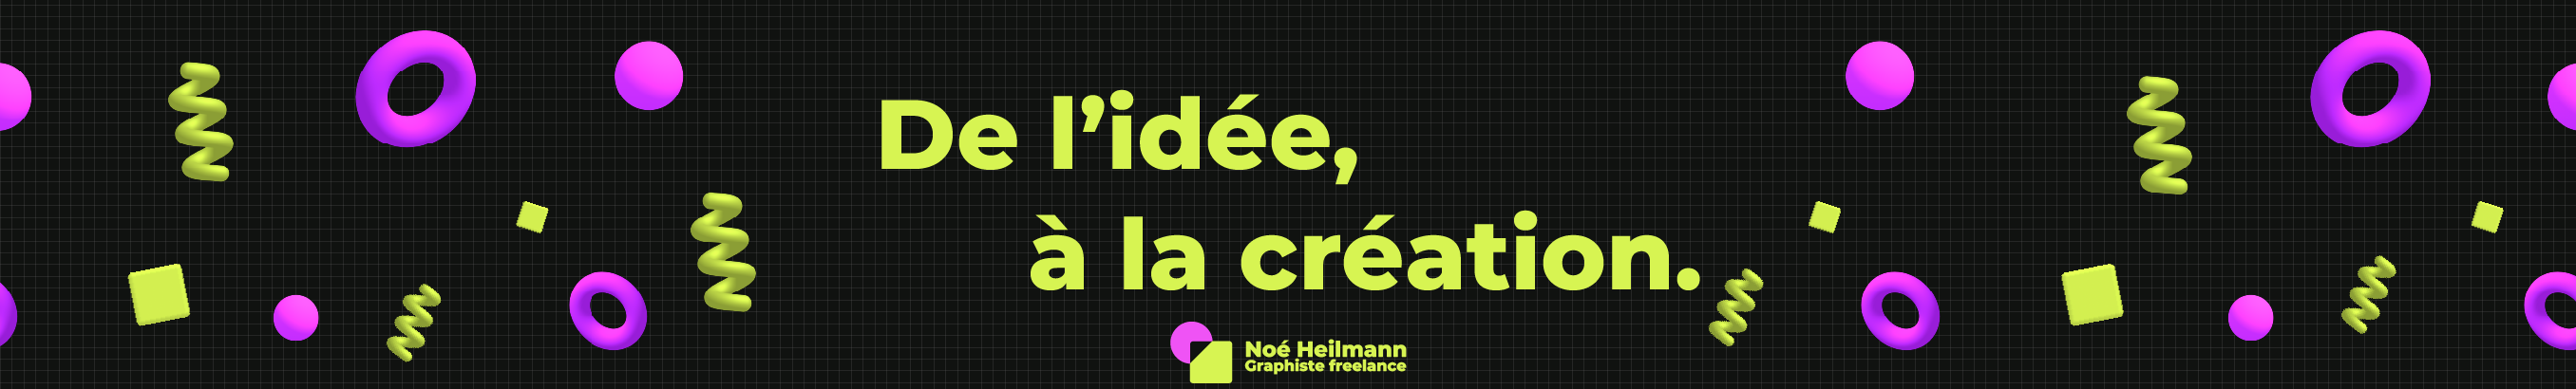 Noé Heilmann's profile banner